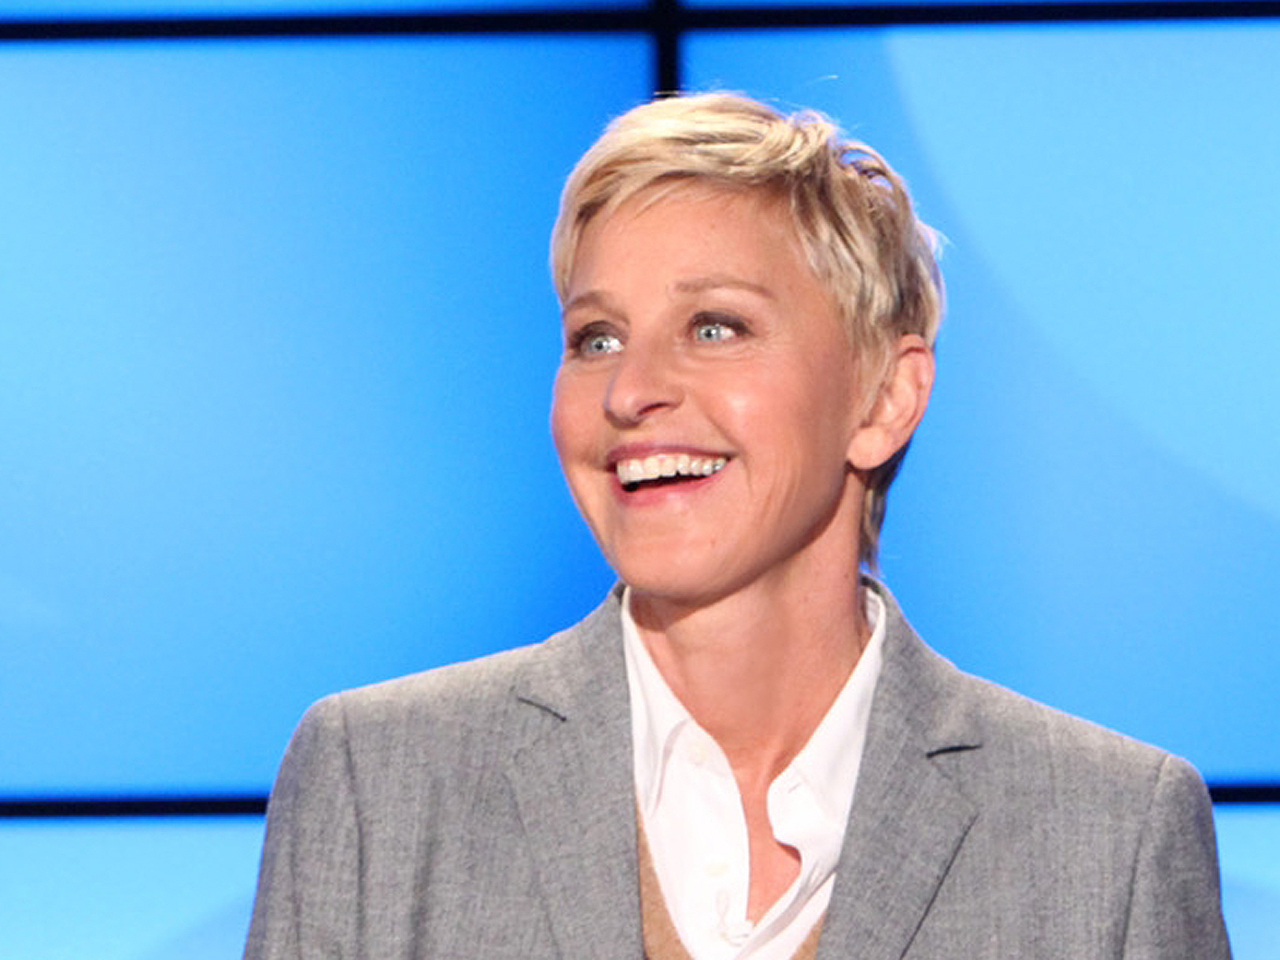 Ellen DeGeneres laughs-off chest pains - CBS News